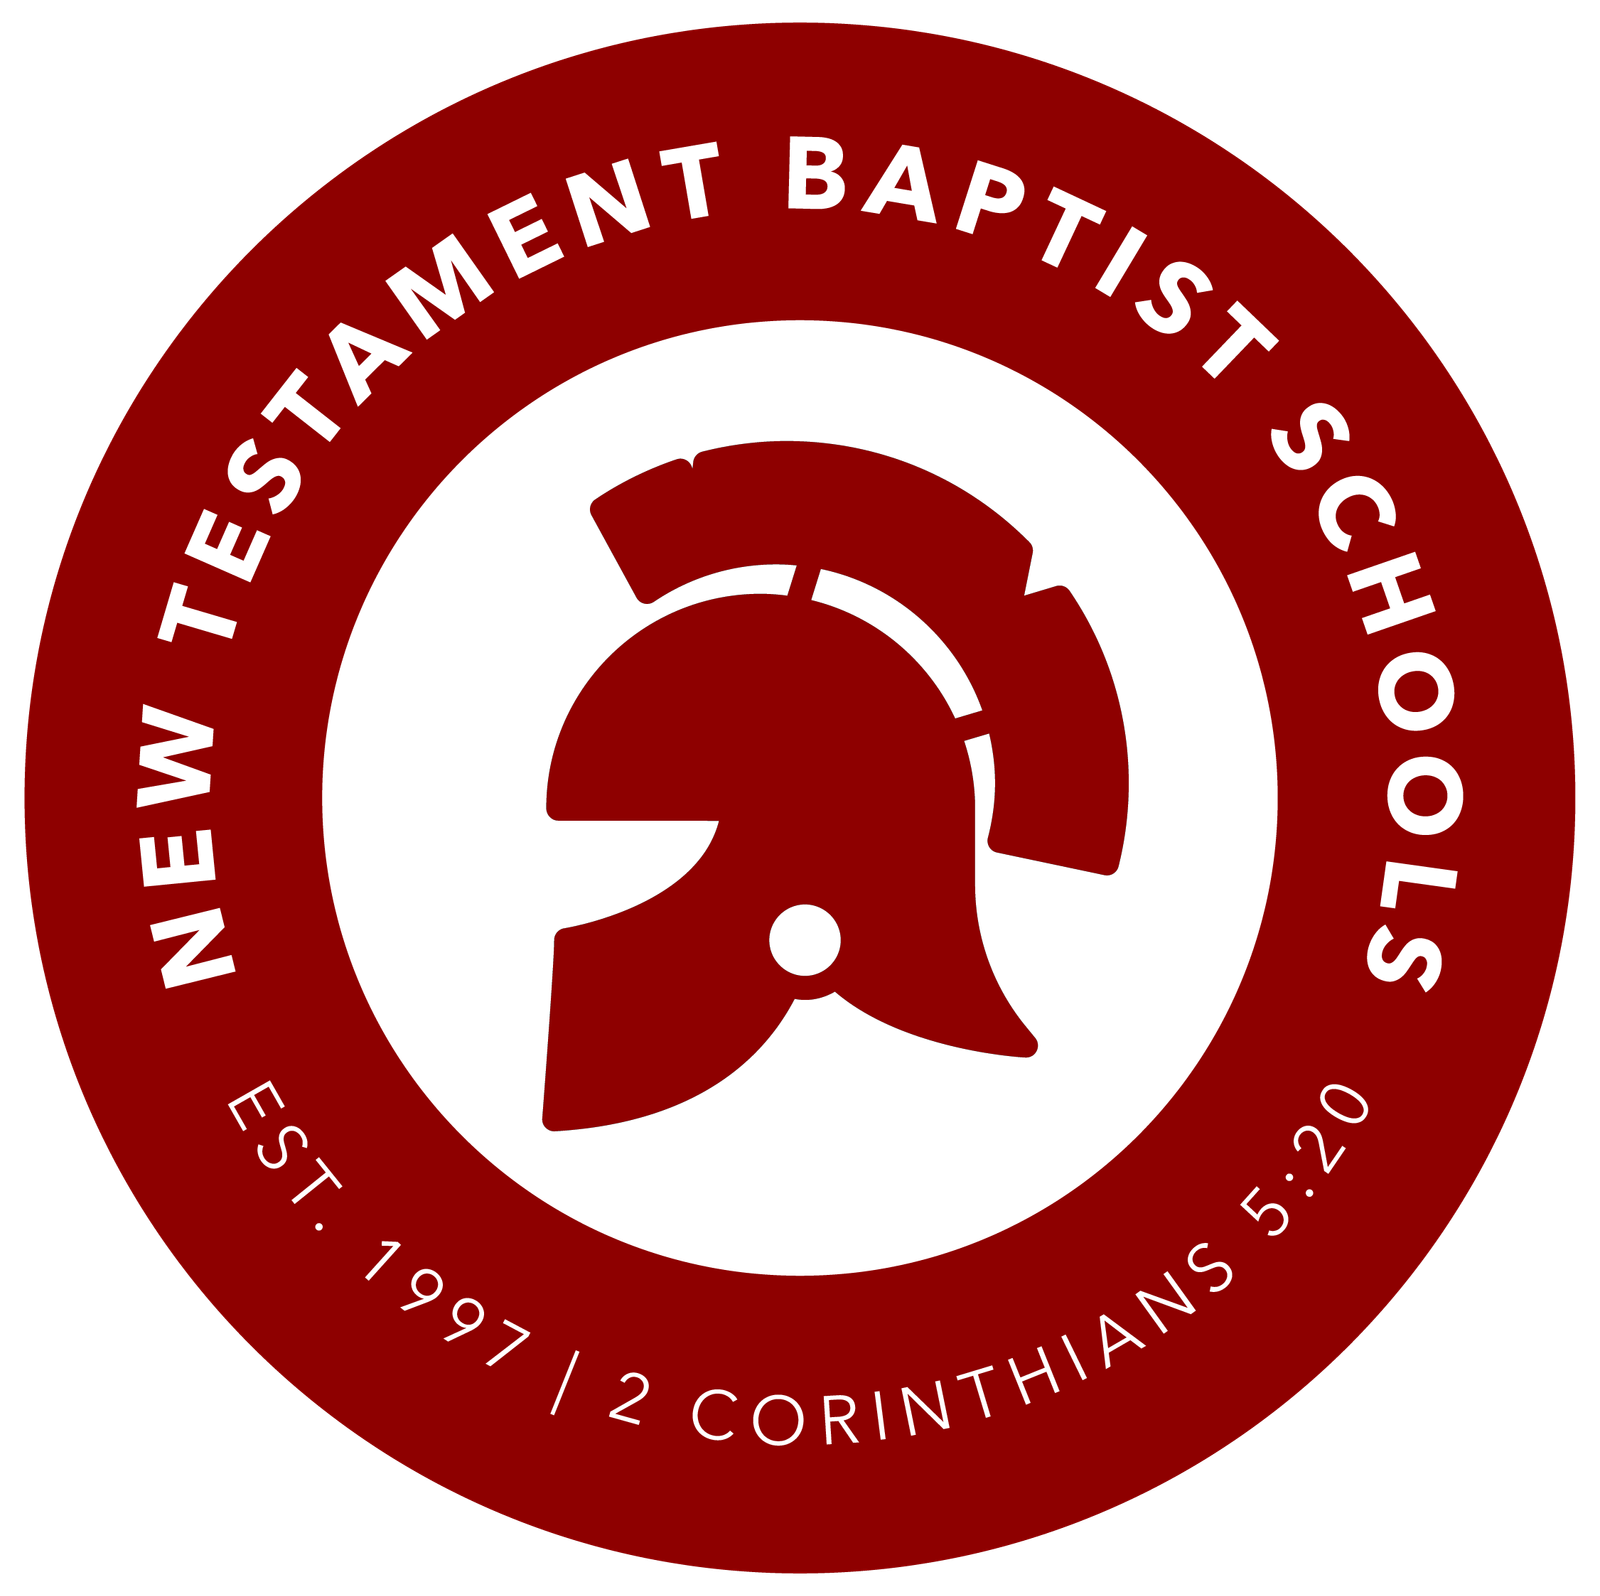 New Testament Baptist Schools